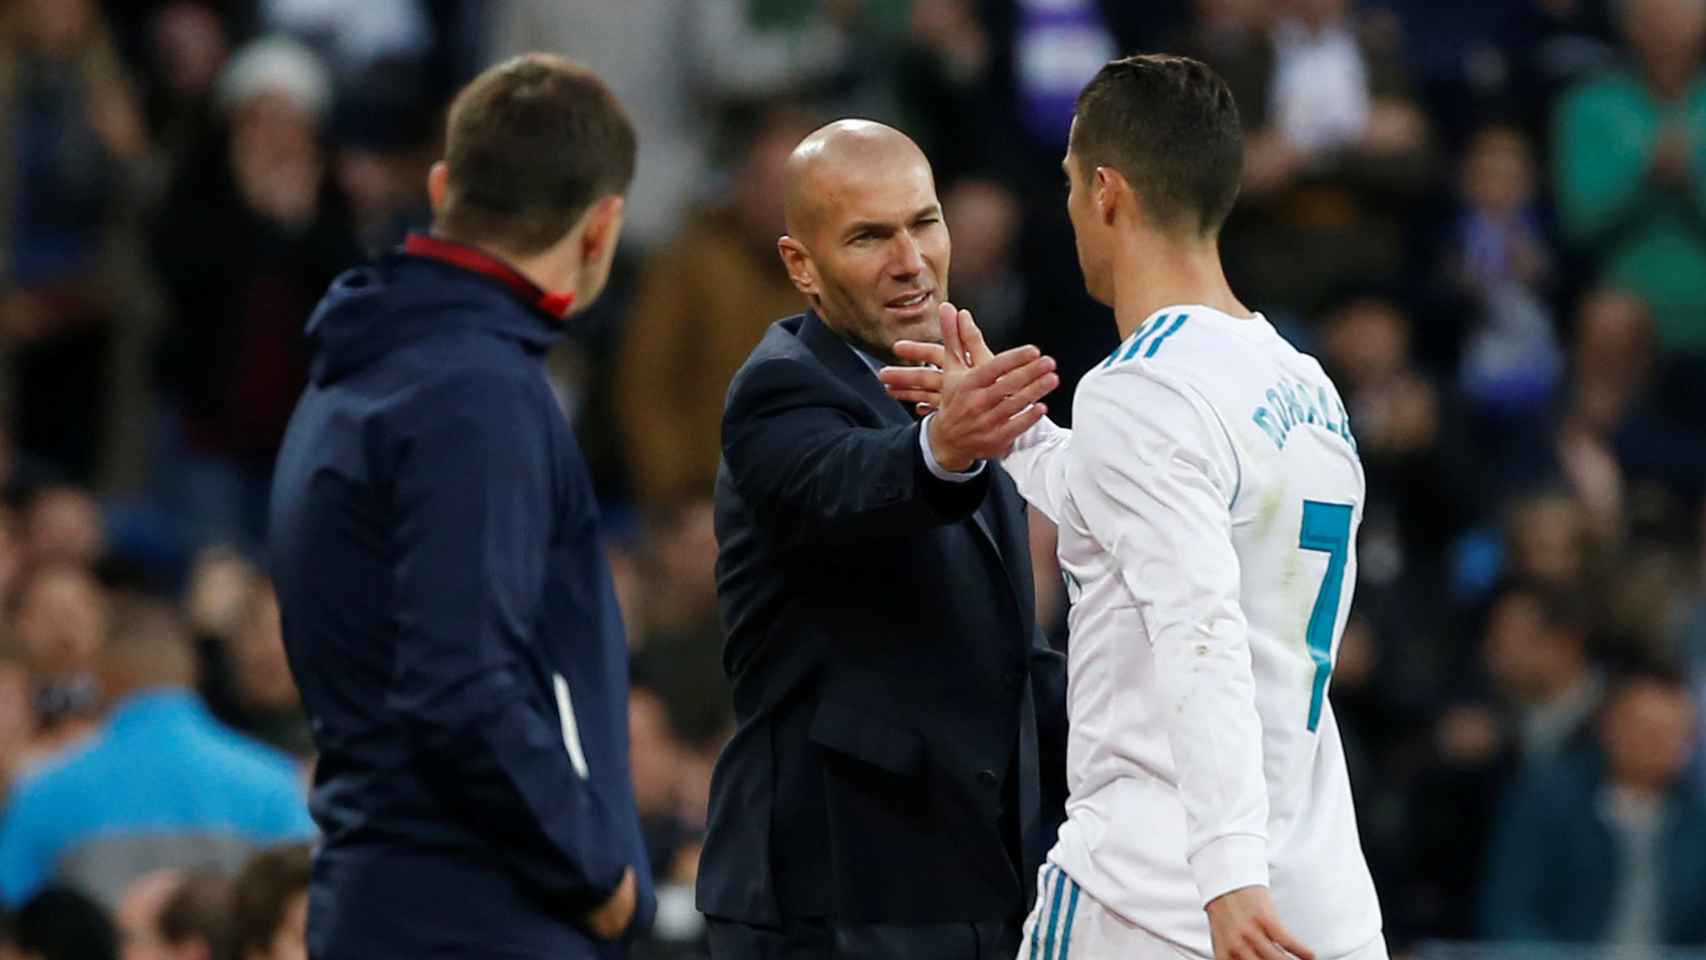 Zidane le da la mano a Cristiano Ronaldo.